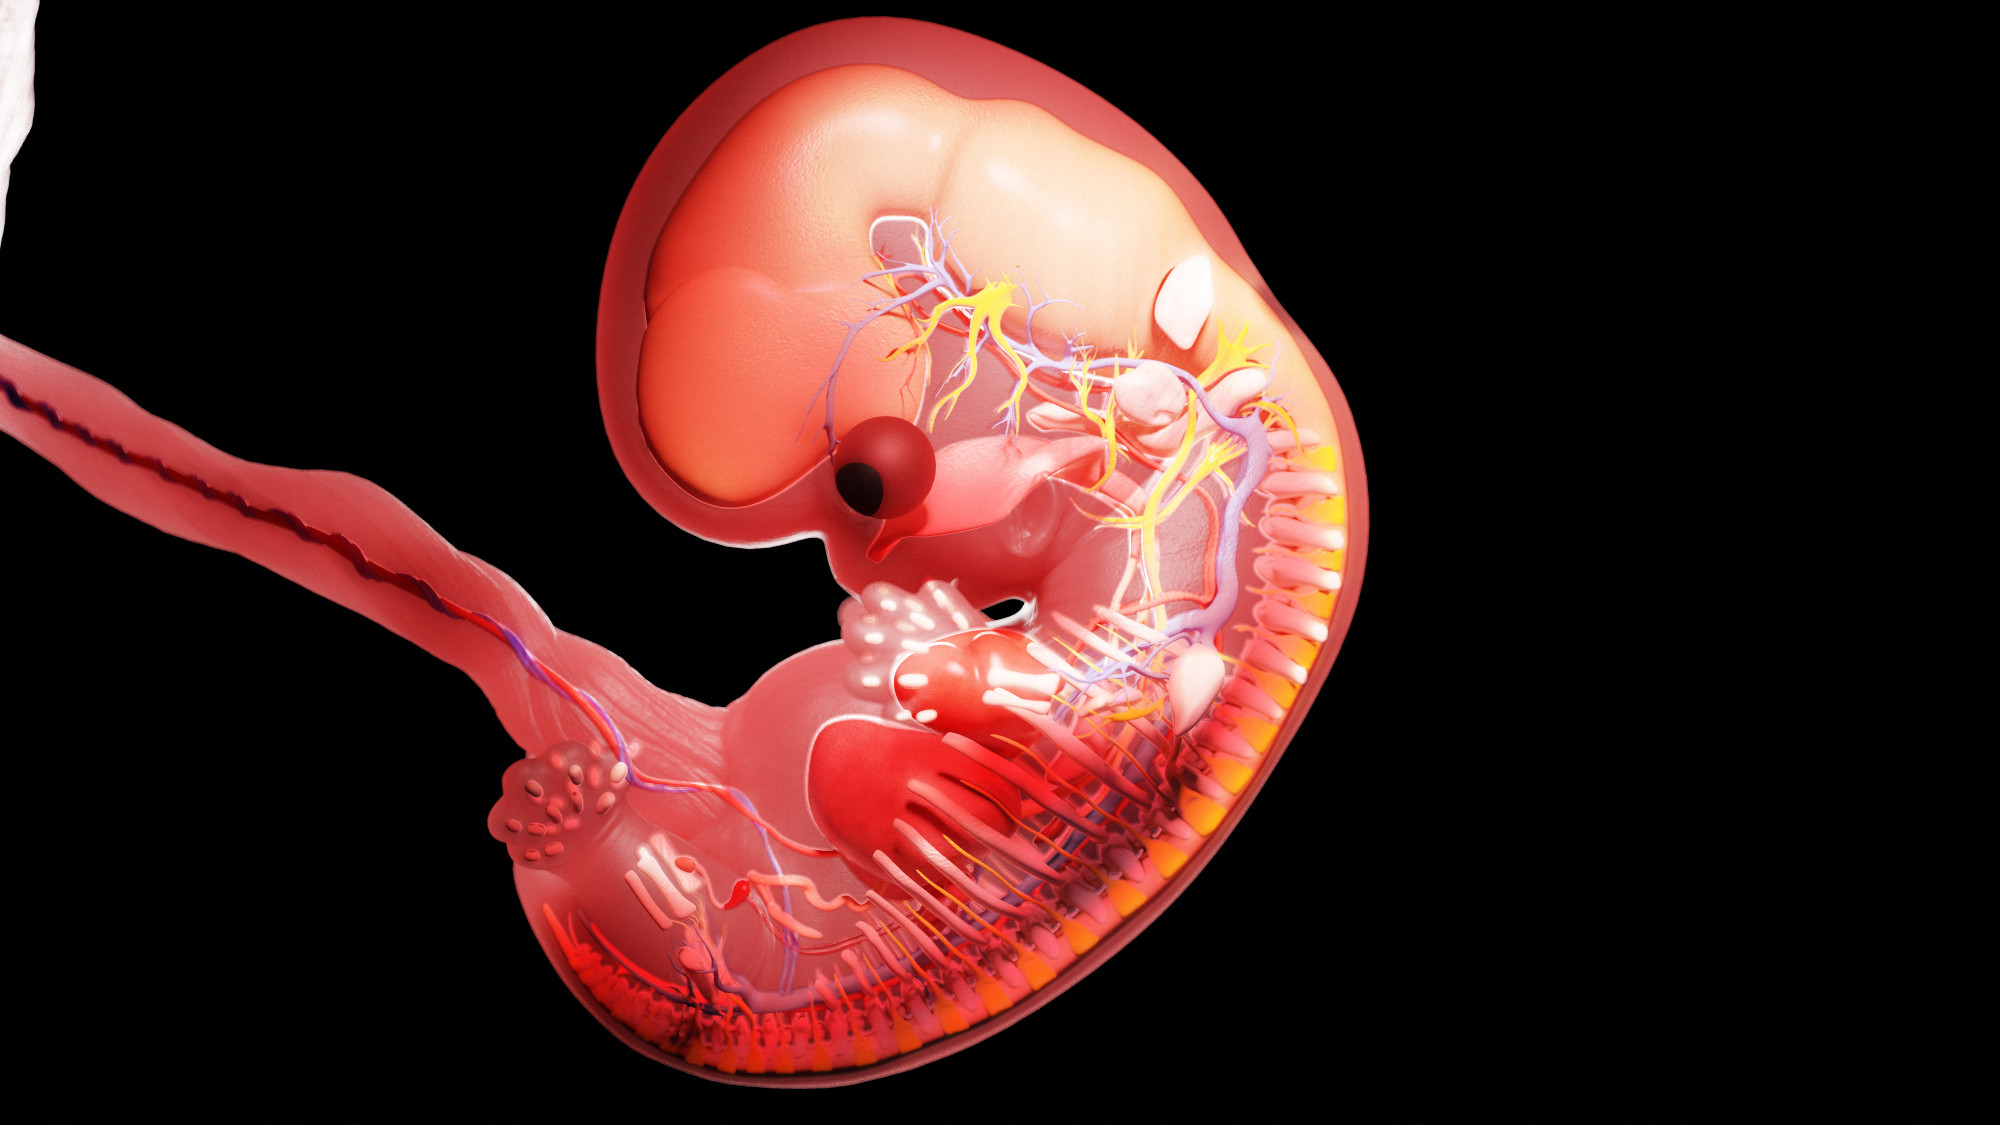 A lassabban fejlődő embriók esetén gyakrabban fordul elő vetélés